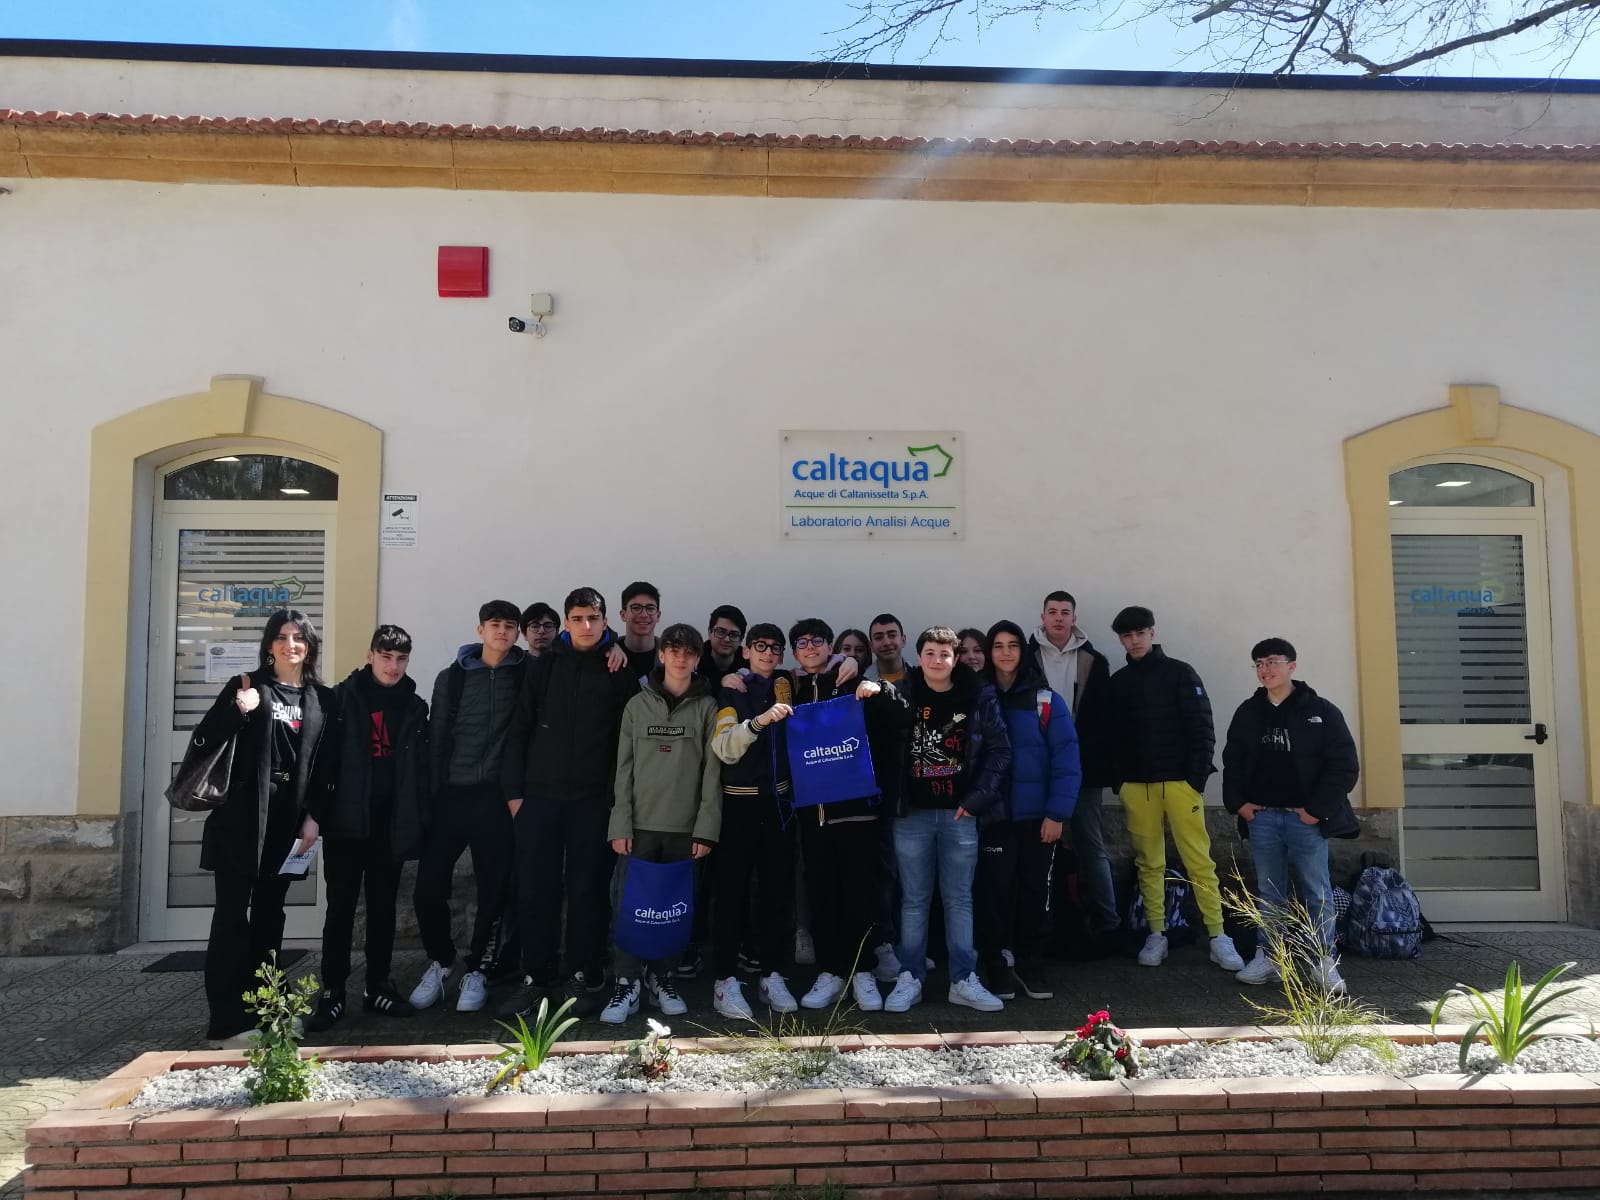 Caltanissetta, studenti del Mottura visitano il Polo Laboratorio di Caltaqua